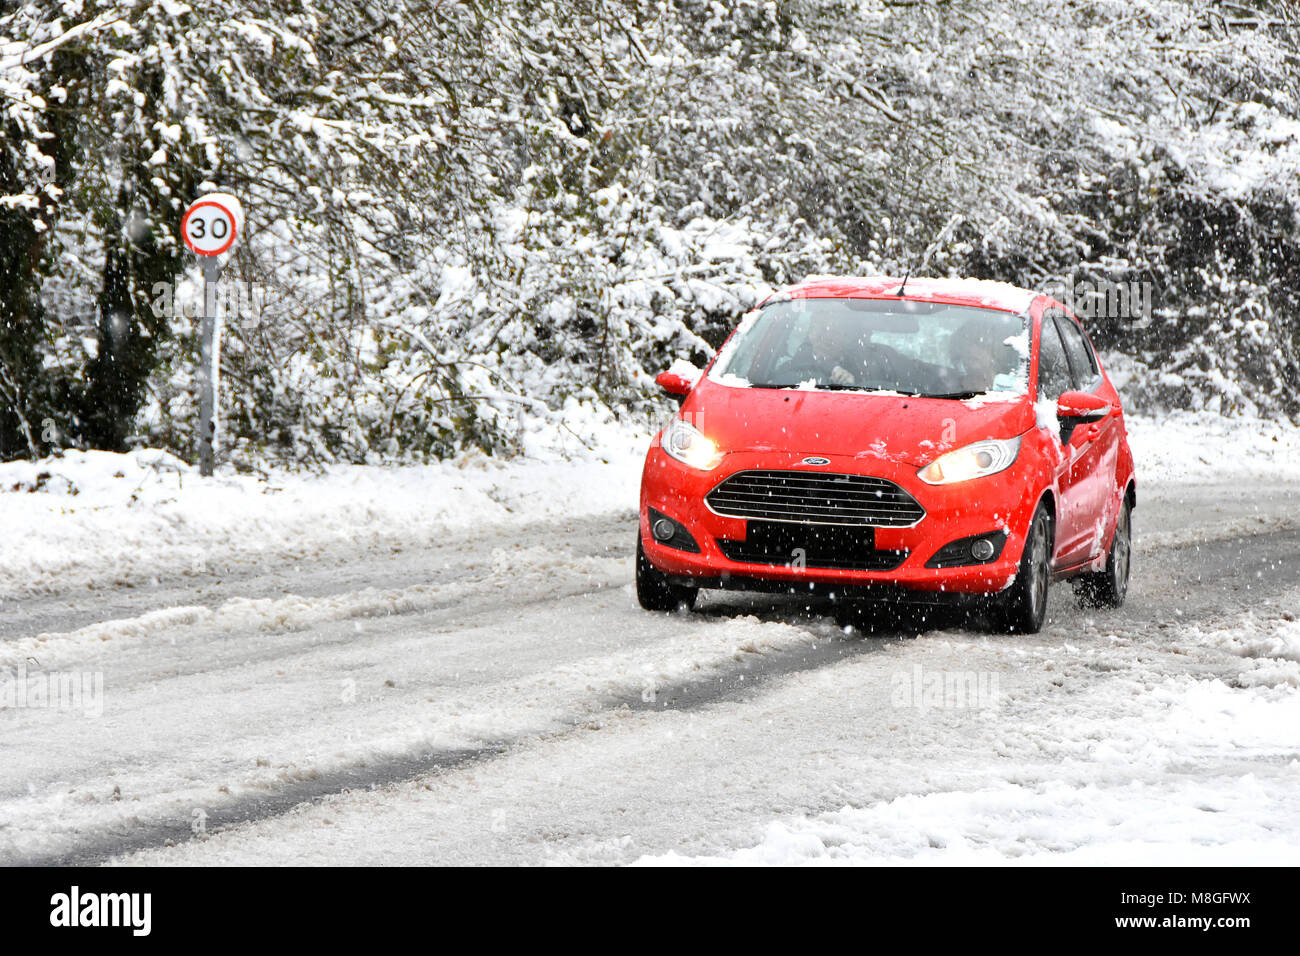 Ford voiture rouge conduite le long 30mph pays couvert de neige en hiver, la route de la création de neige Paysage de neige scène toile Essex England UK Banque D'Images